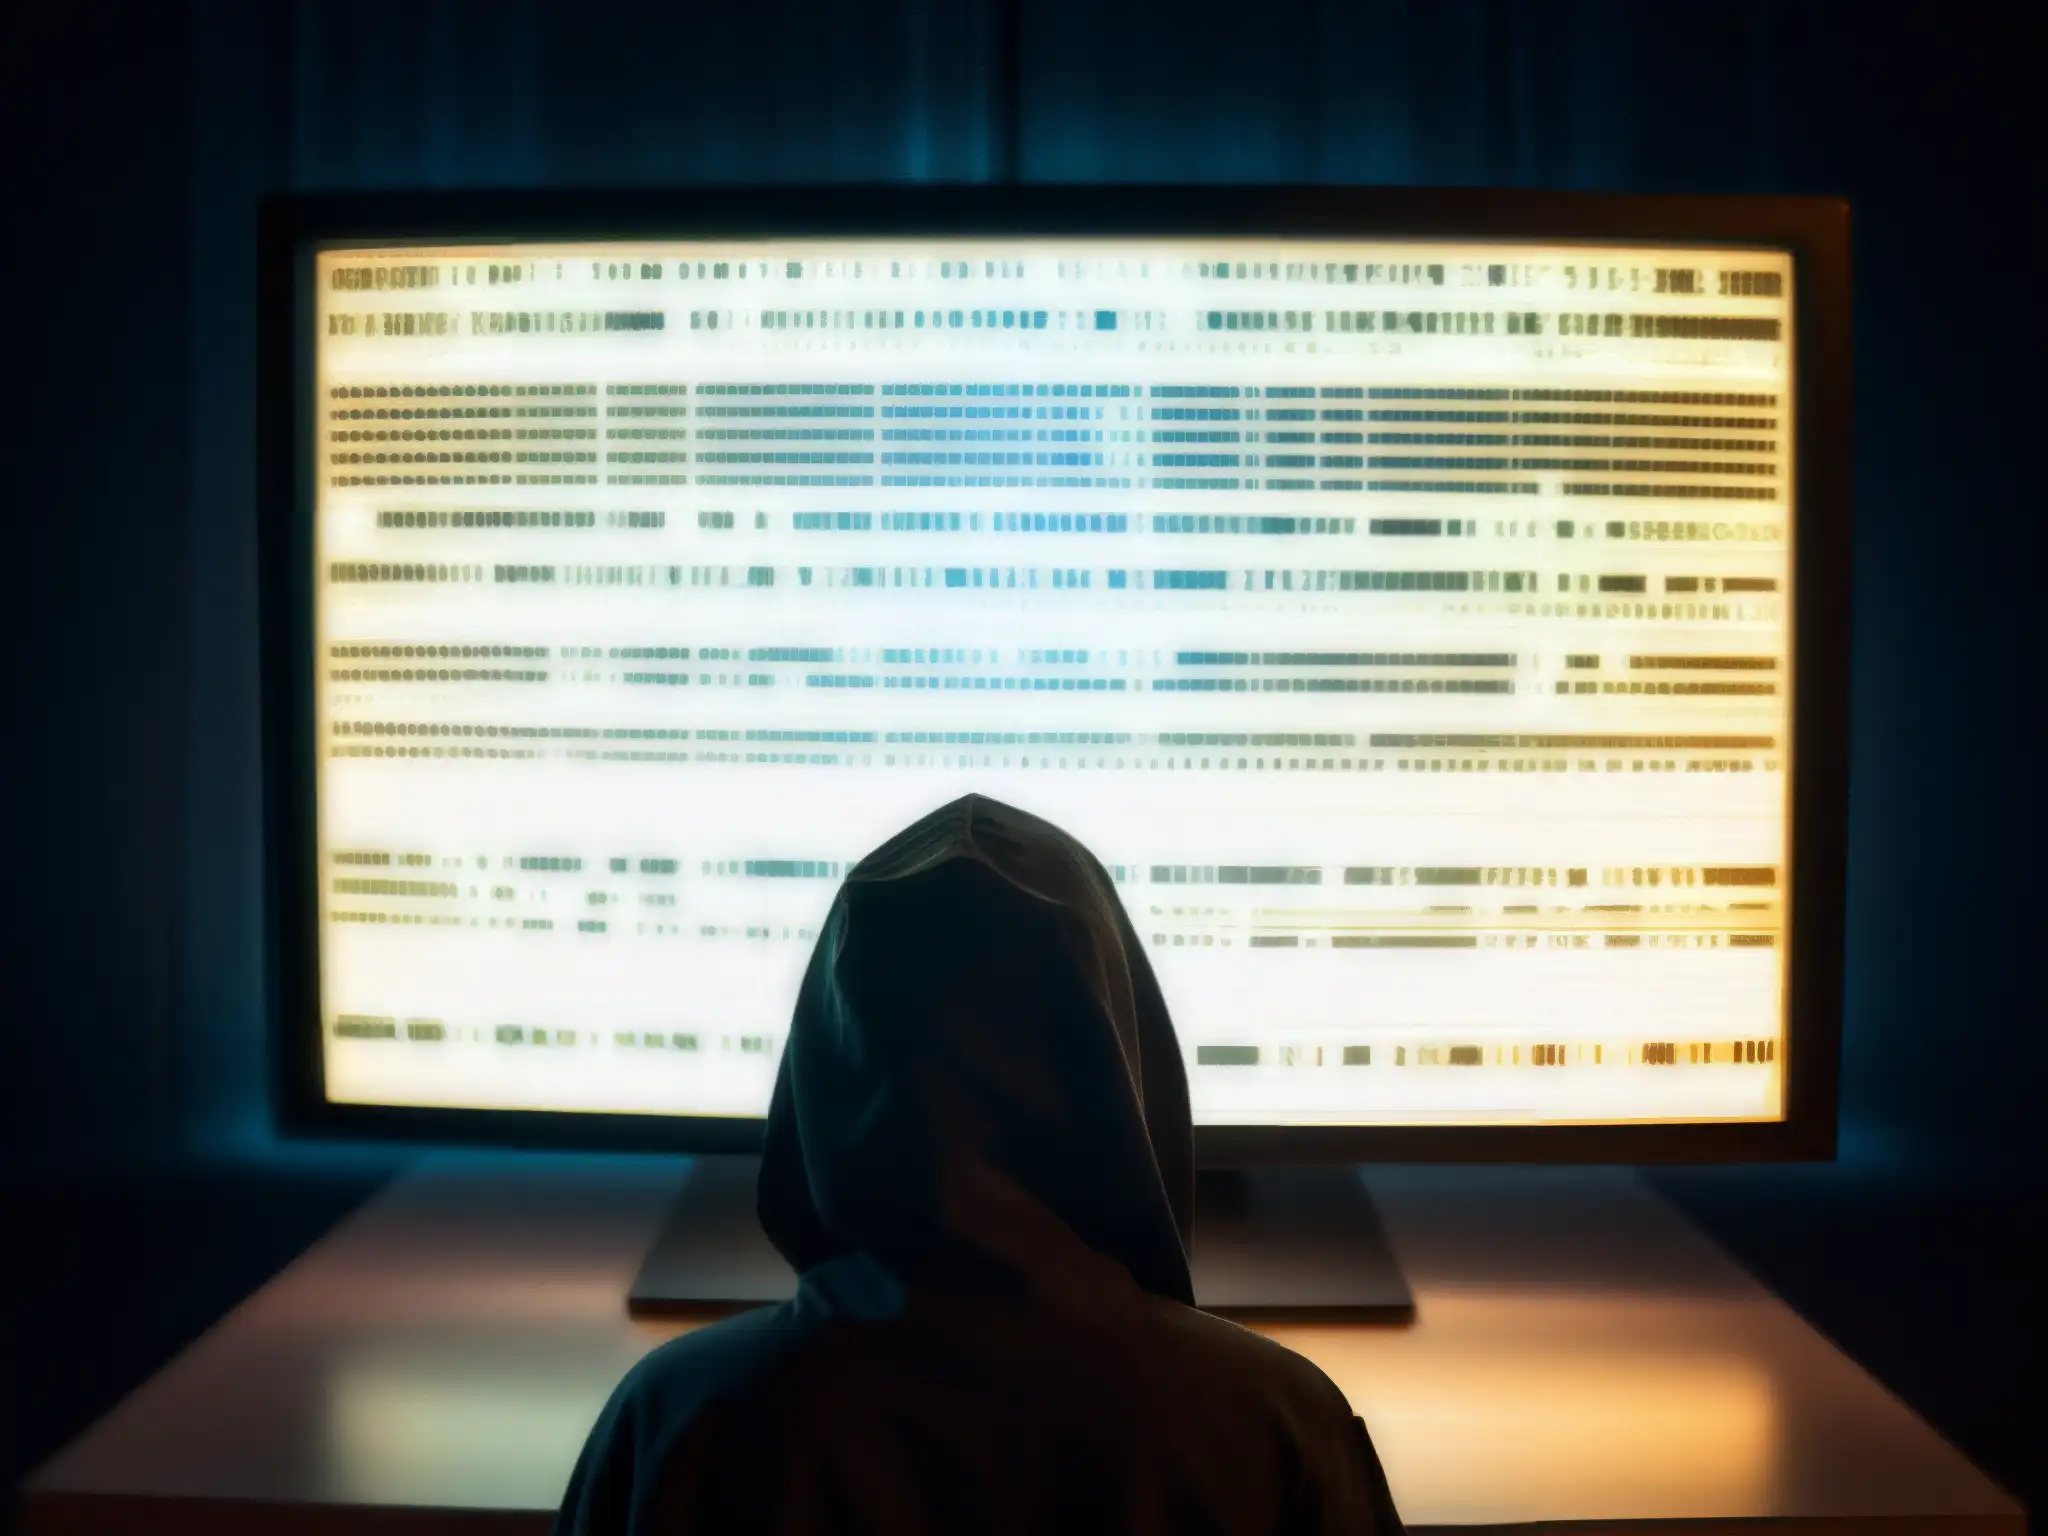 Un ambiente misterioso de la Deep Web, donde se revelan secretos oscuros en el brillo de la pantalla del ordenador